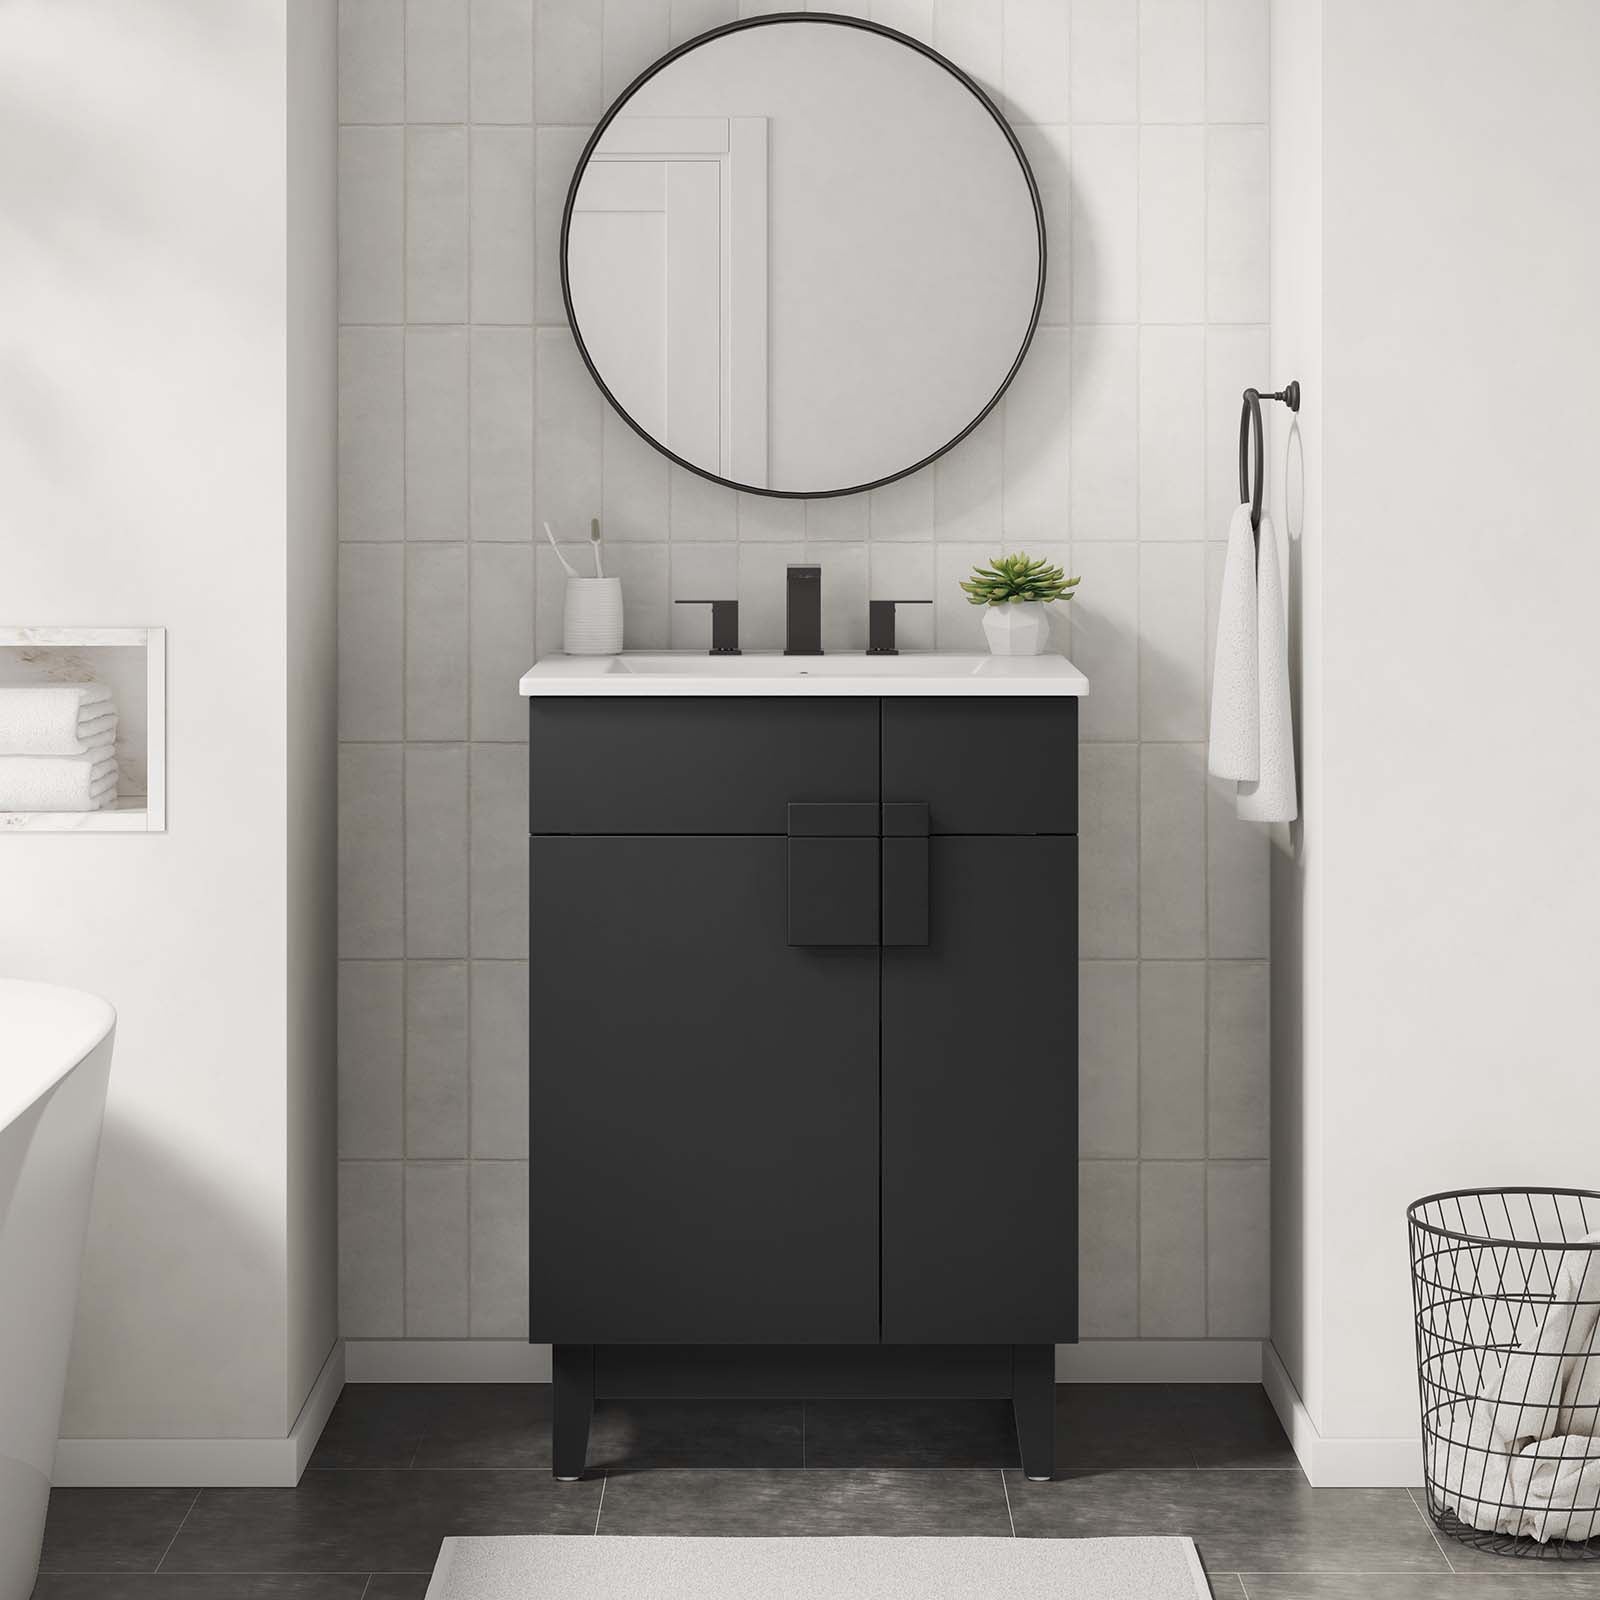 Miles 24” Bathroom Vanity - East Shore Modern Home Furnishings